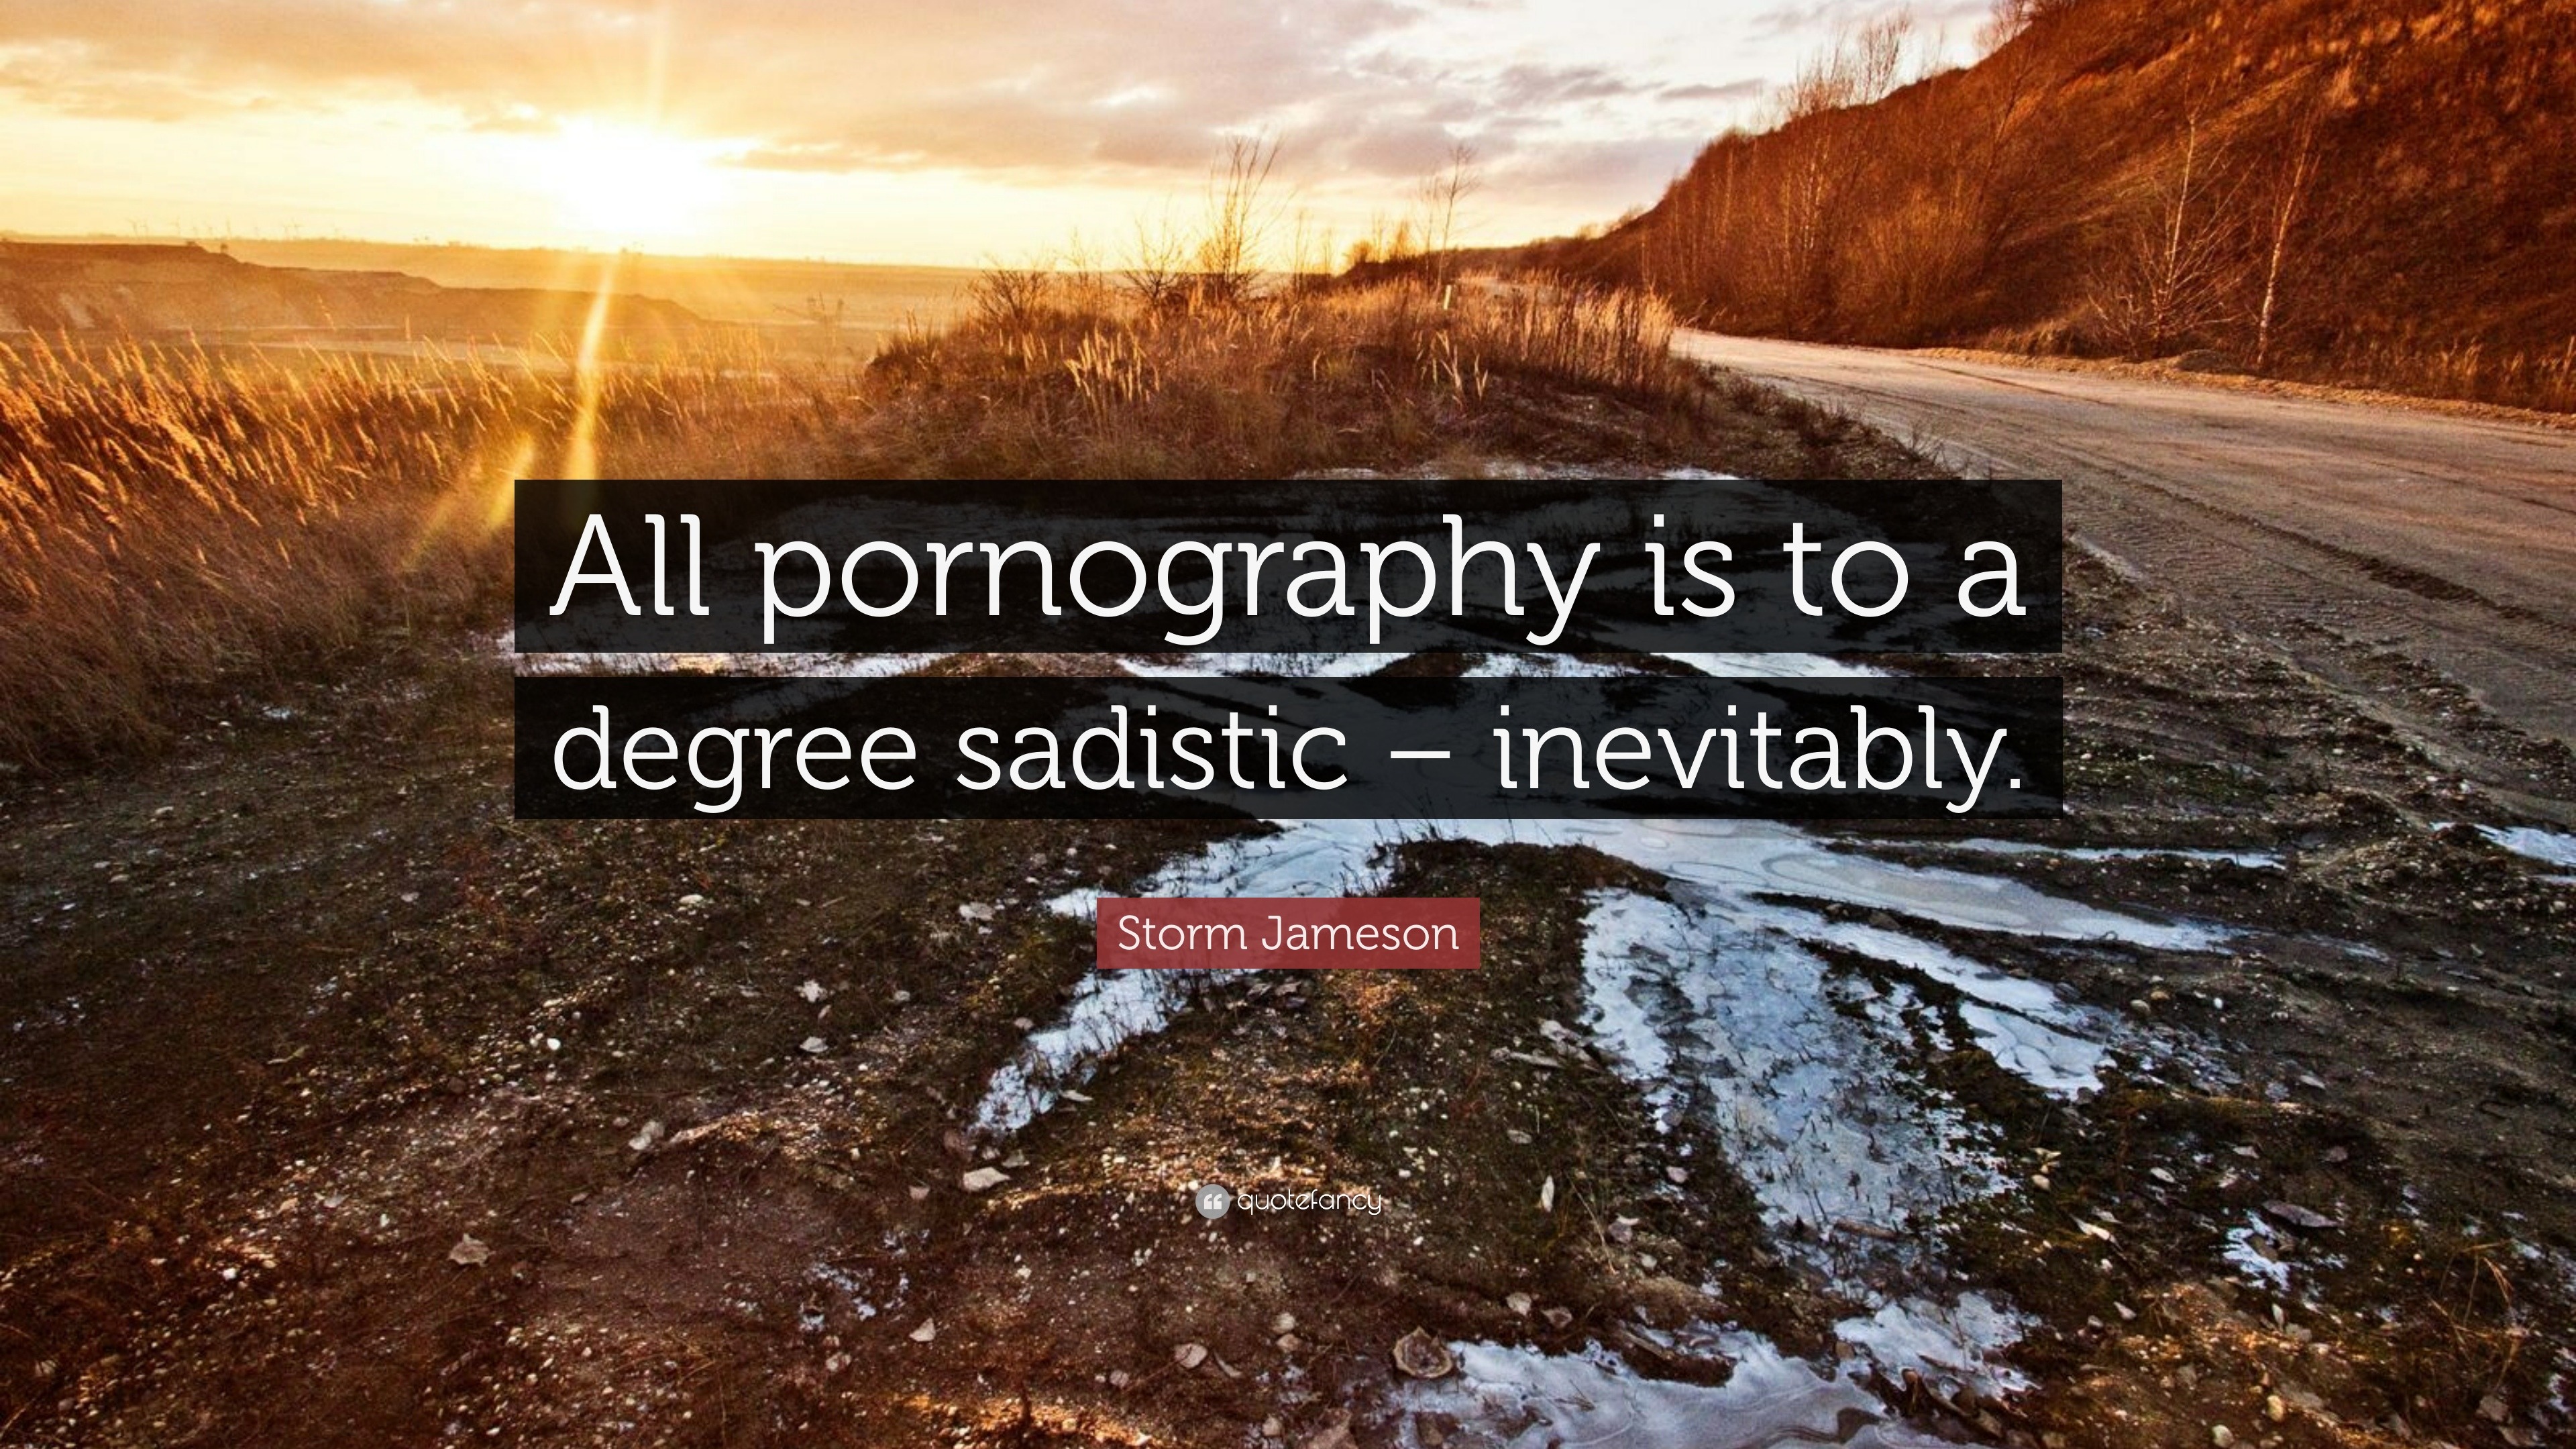 All pornography